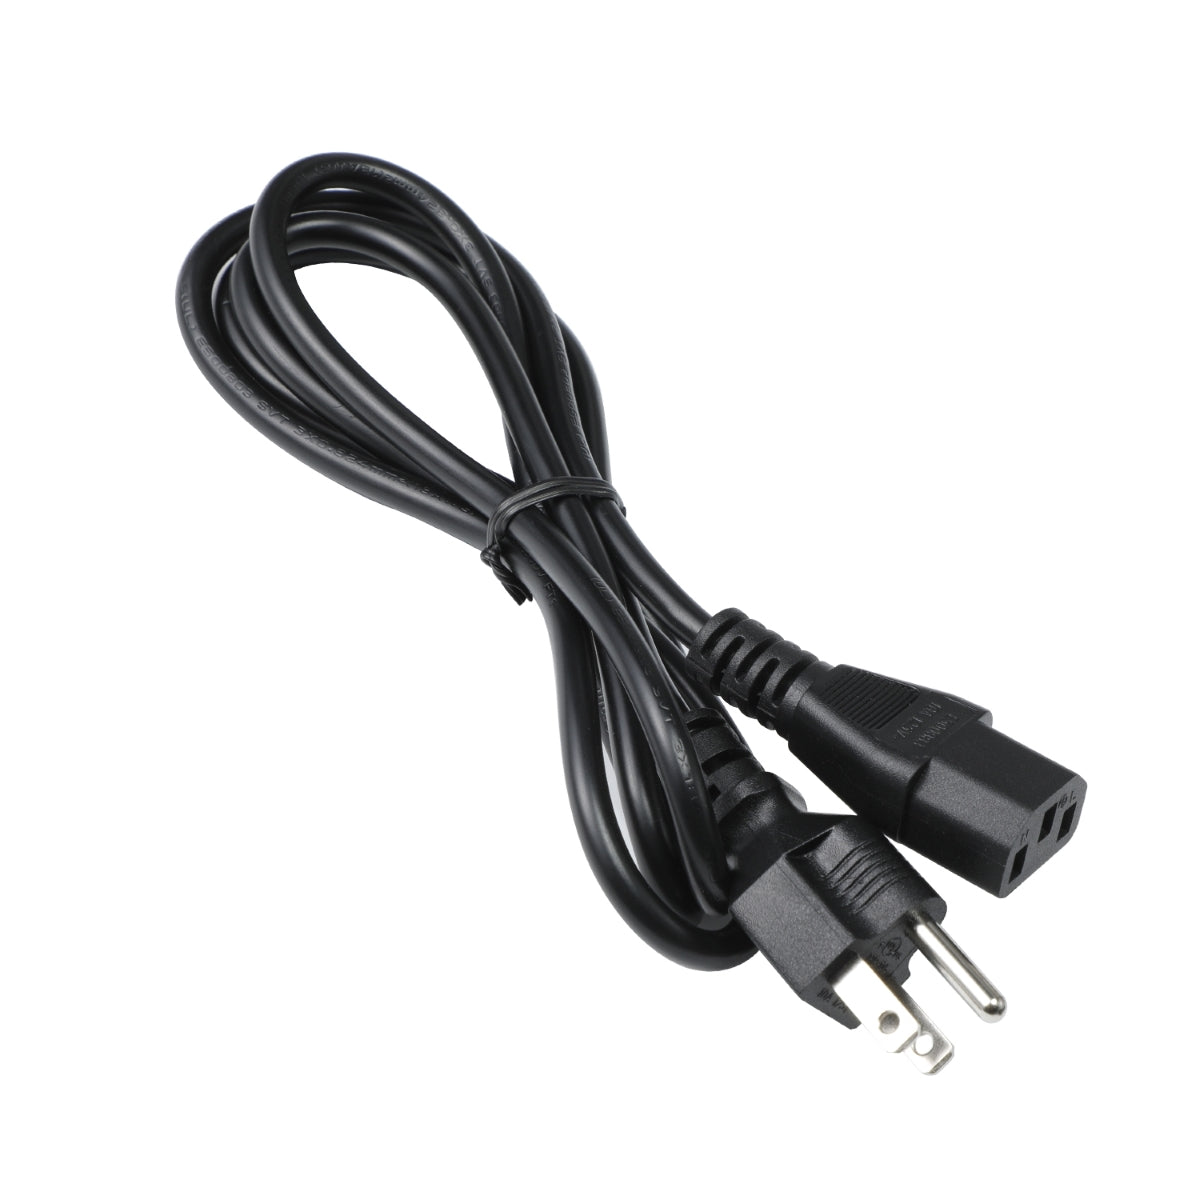 Power Cord for Sceptre E255B-1658A Monitor